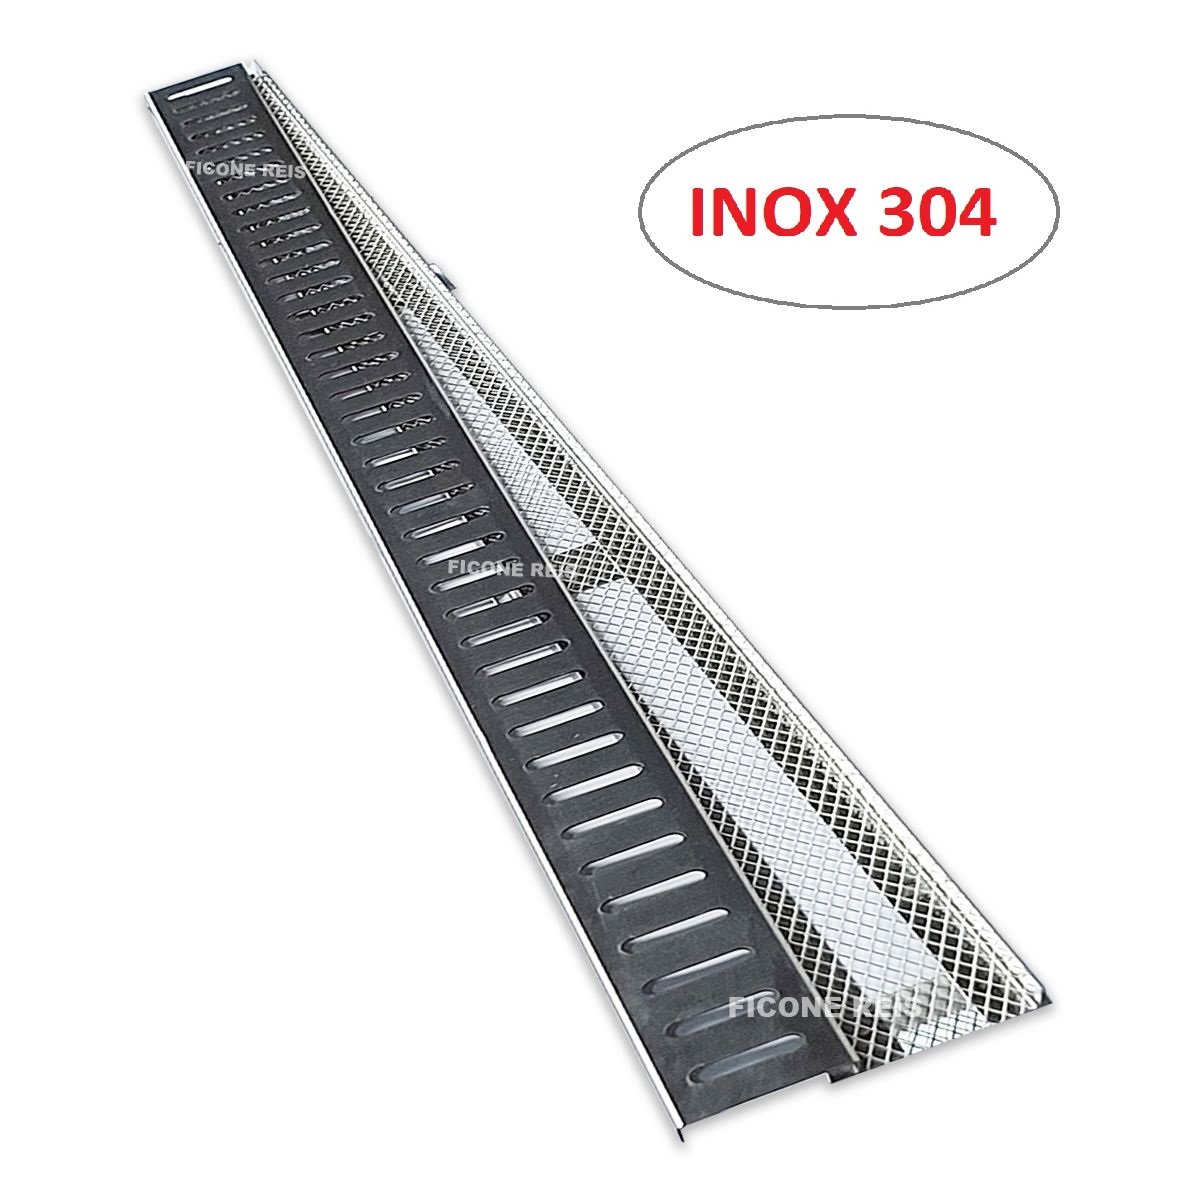 Ralo Linear 5cm x 50cm Inox 304 com suporte e Tela Anti Insetos Borda de Piscina Ficone Reis - 1